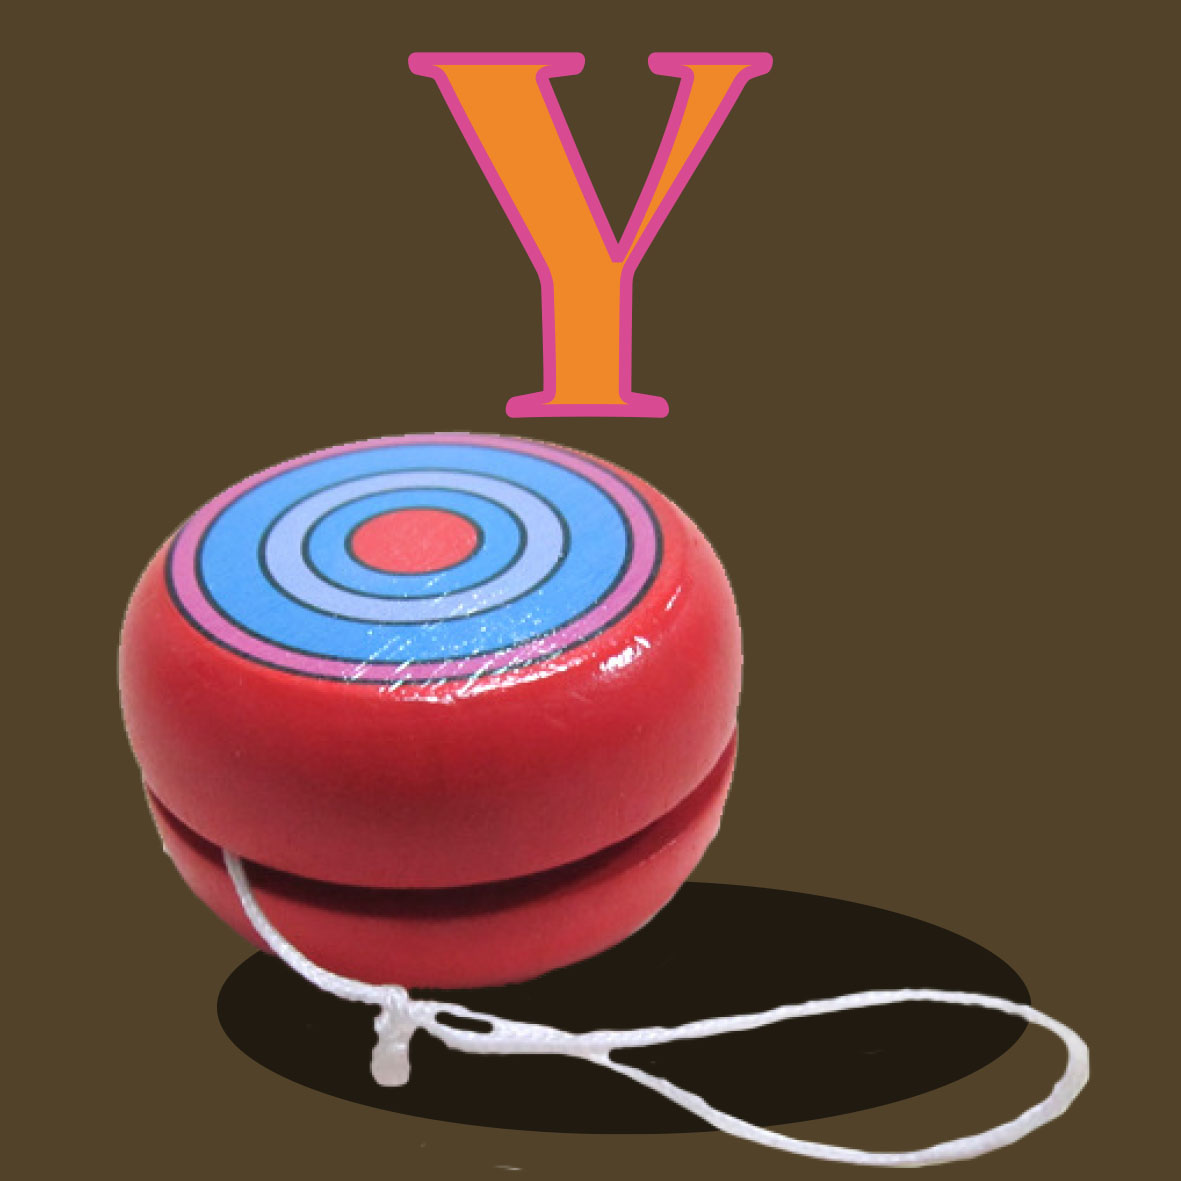 imagen de un juguete llamado yoyo, tiene una forma redondo que de el cuelga una cuerda 